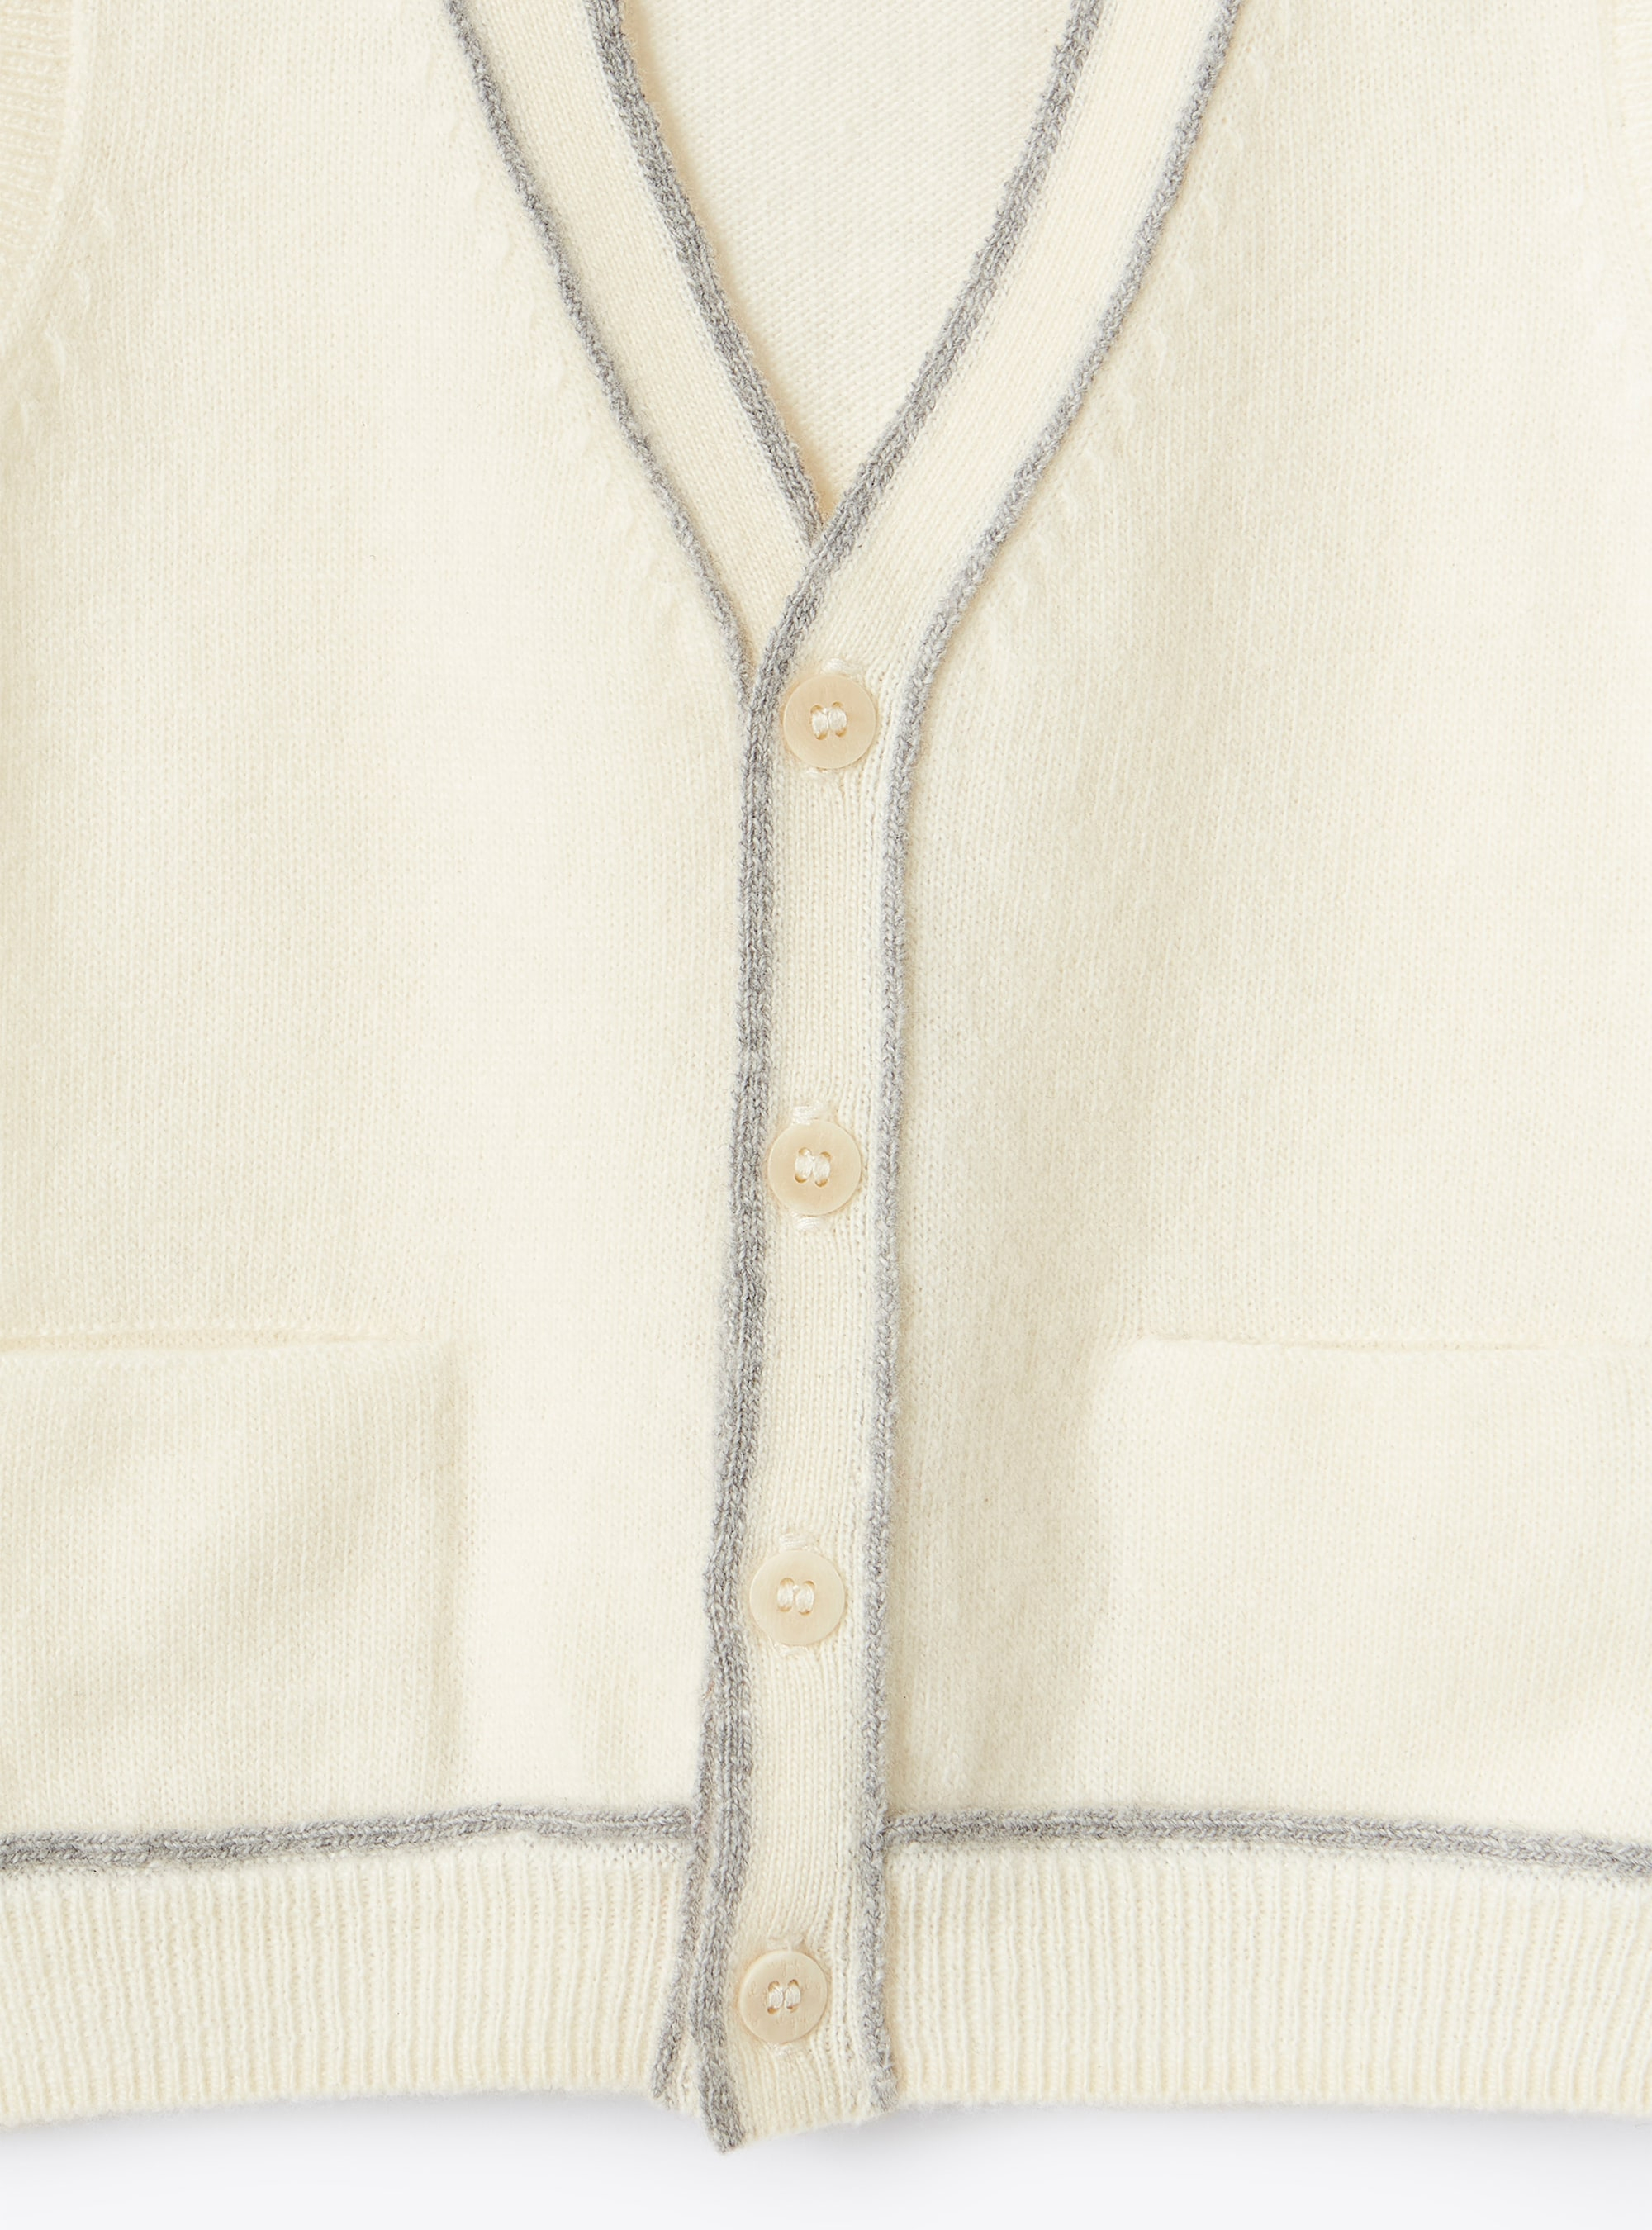 Gilet in lana con profili a contrasto - Bianco | Il Gufo